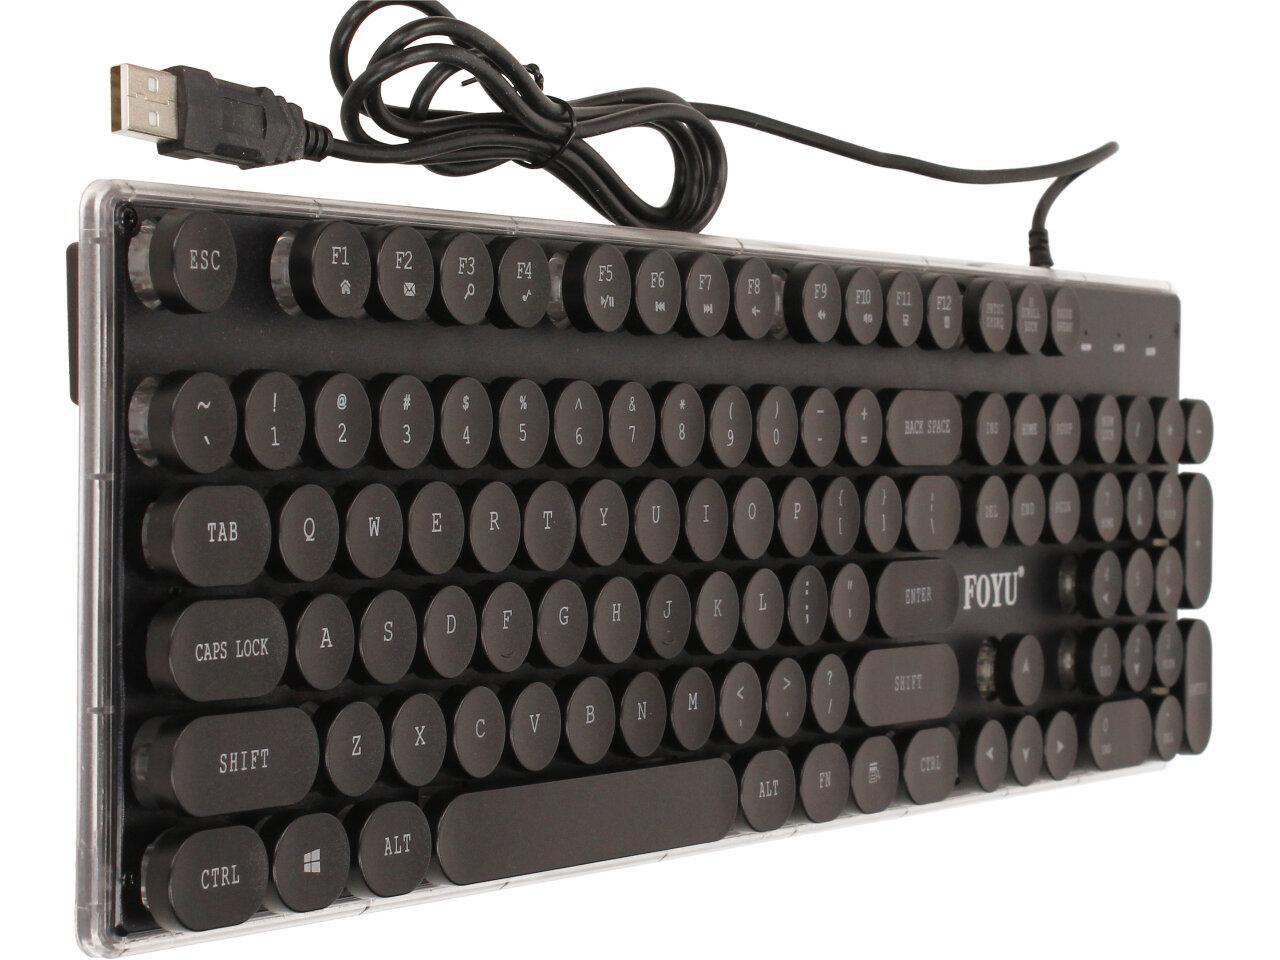 Retro podsvícená klávesnice FO-D005